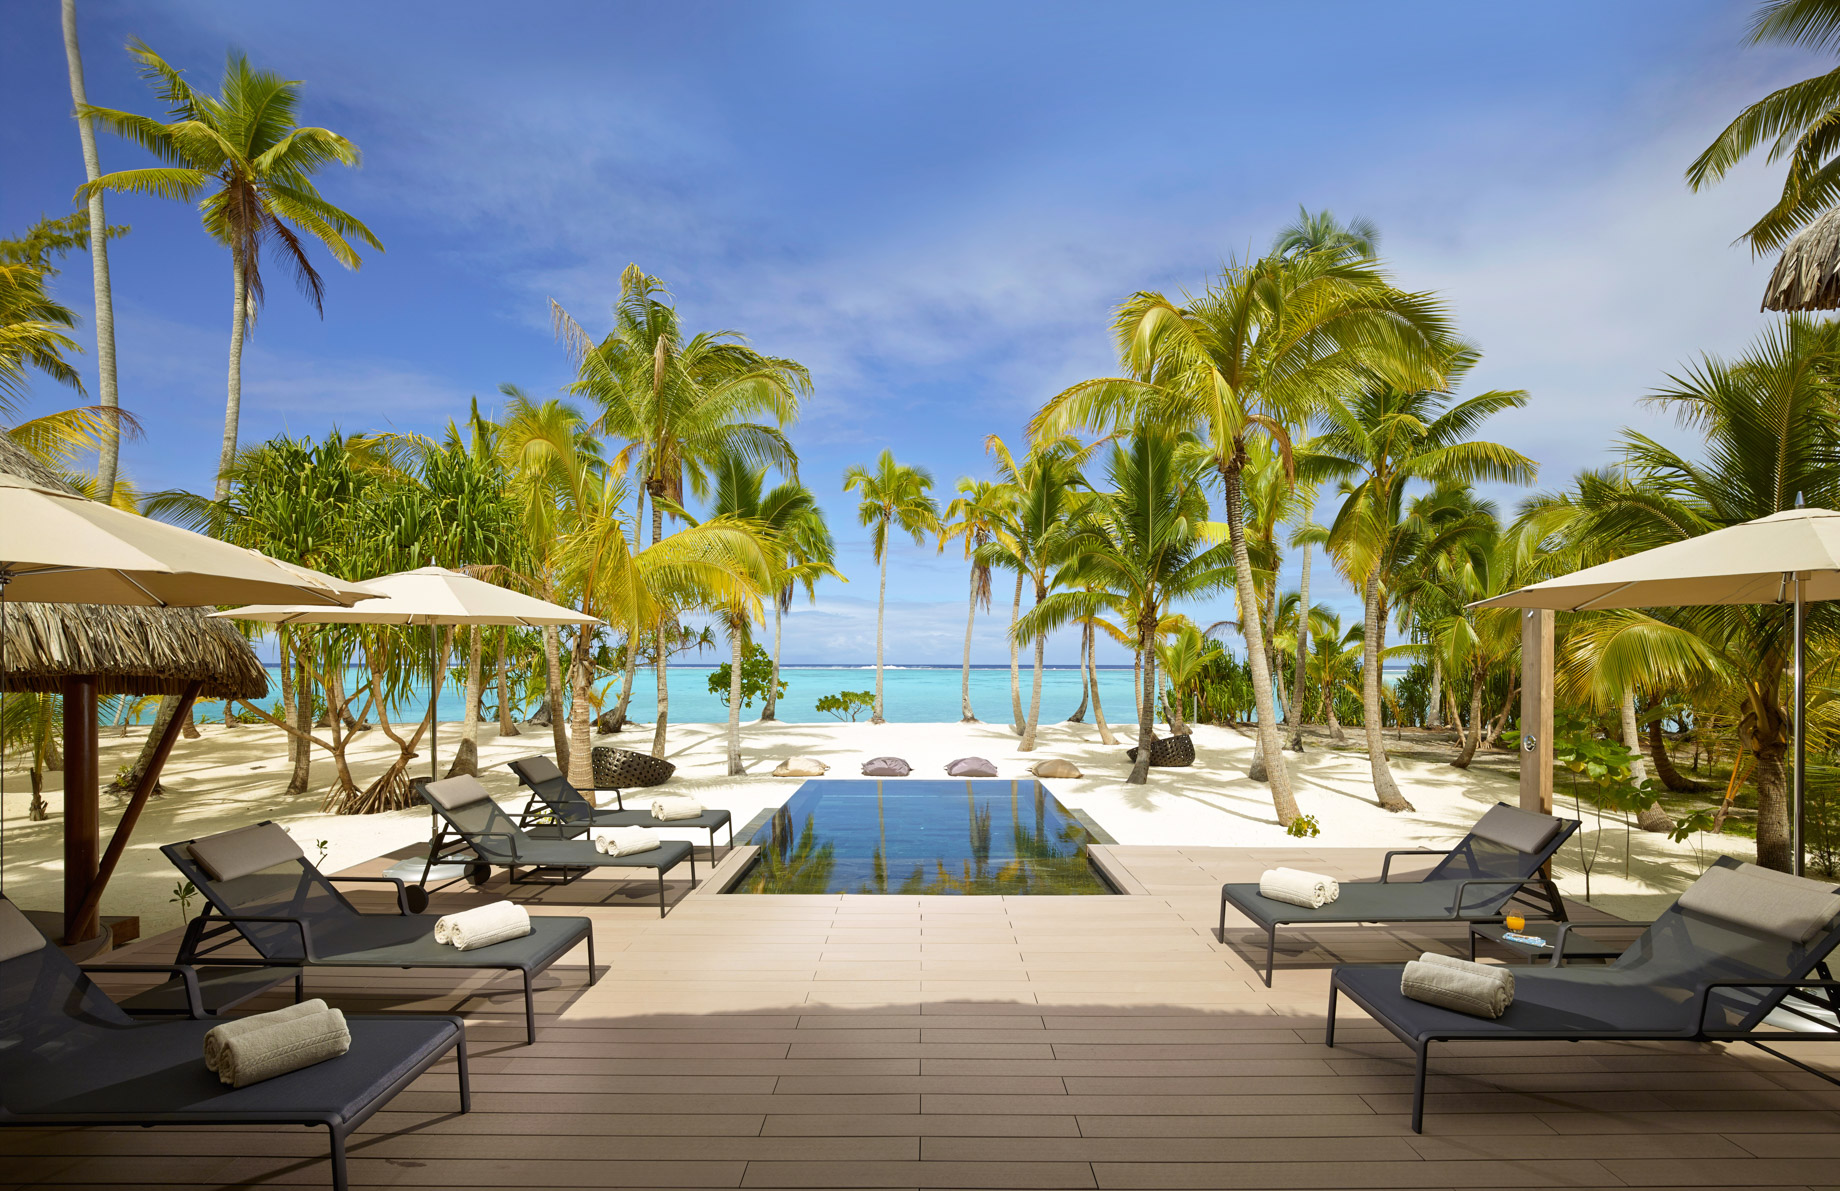 The Brando Resort - Tetiaroa Private Island, French Polynesia - 3 Bedroom Beachfront Villa Ocean View